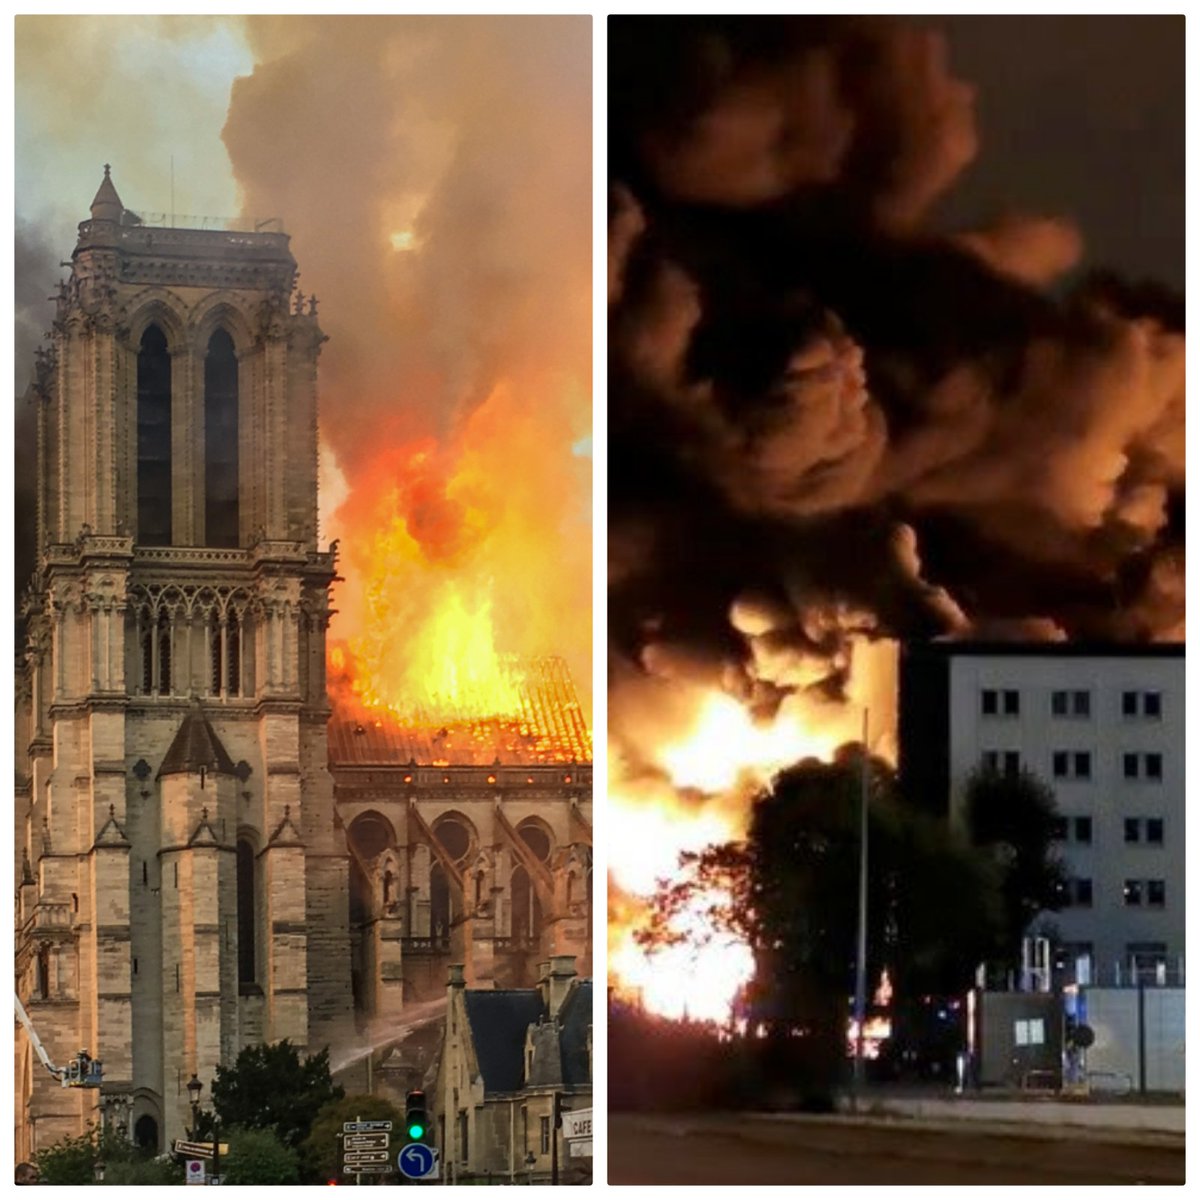 Notre Dame de Paris...

Lubrizol à Rouen...

On n'oublie RIEN et on n'oubliera pas.